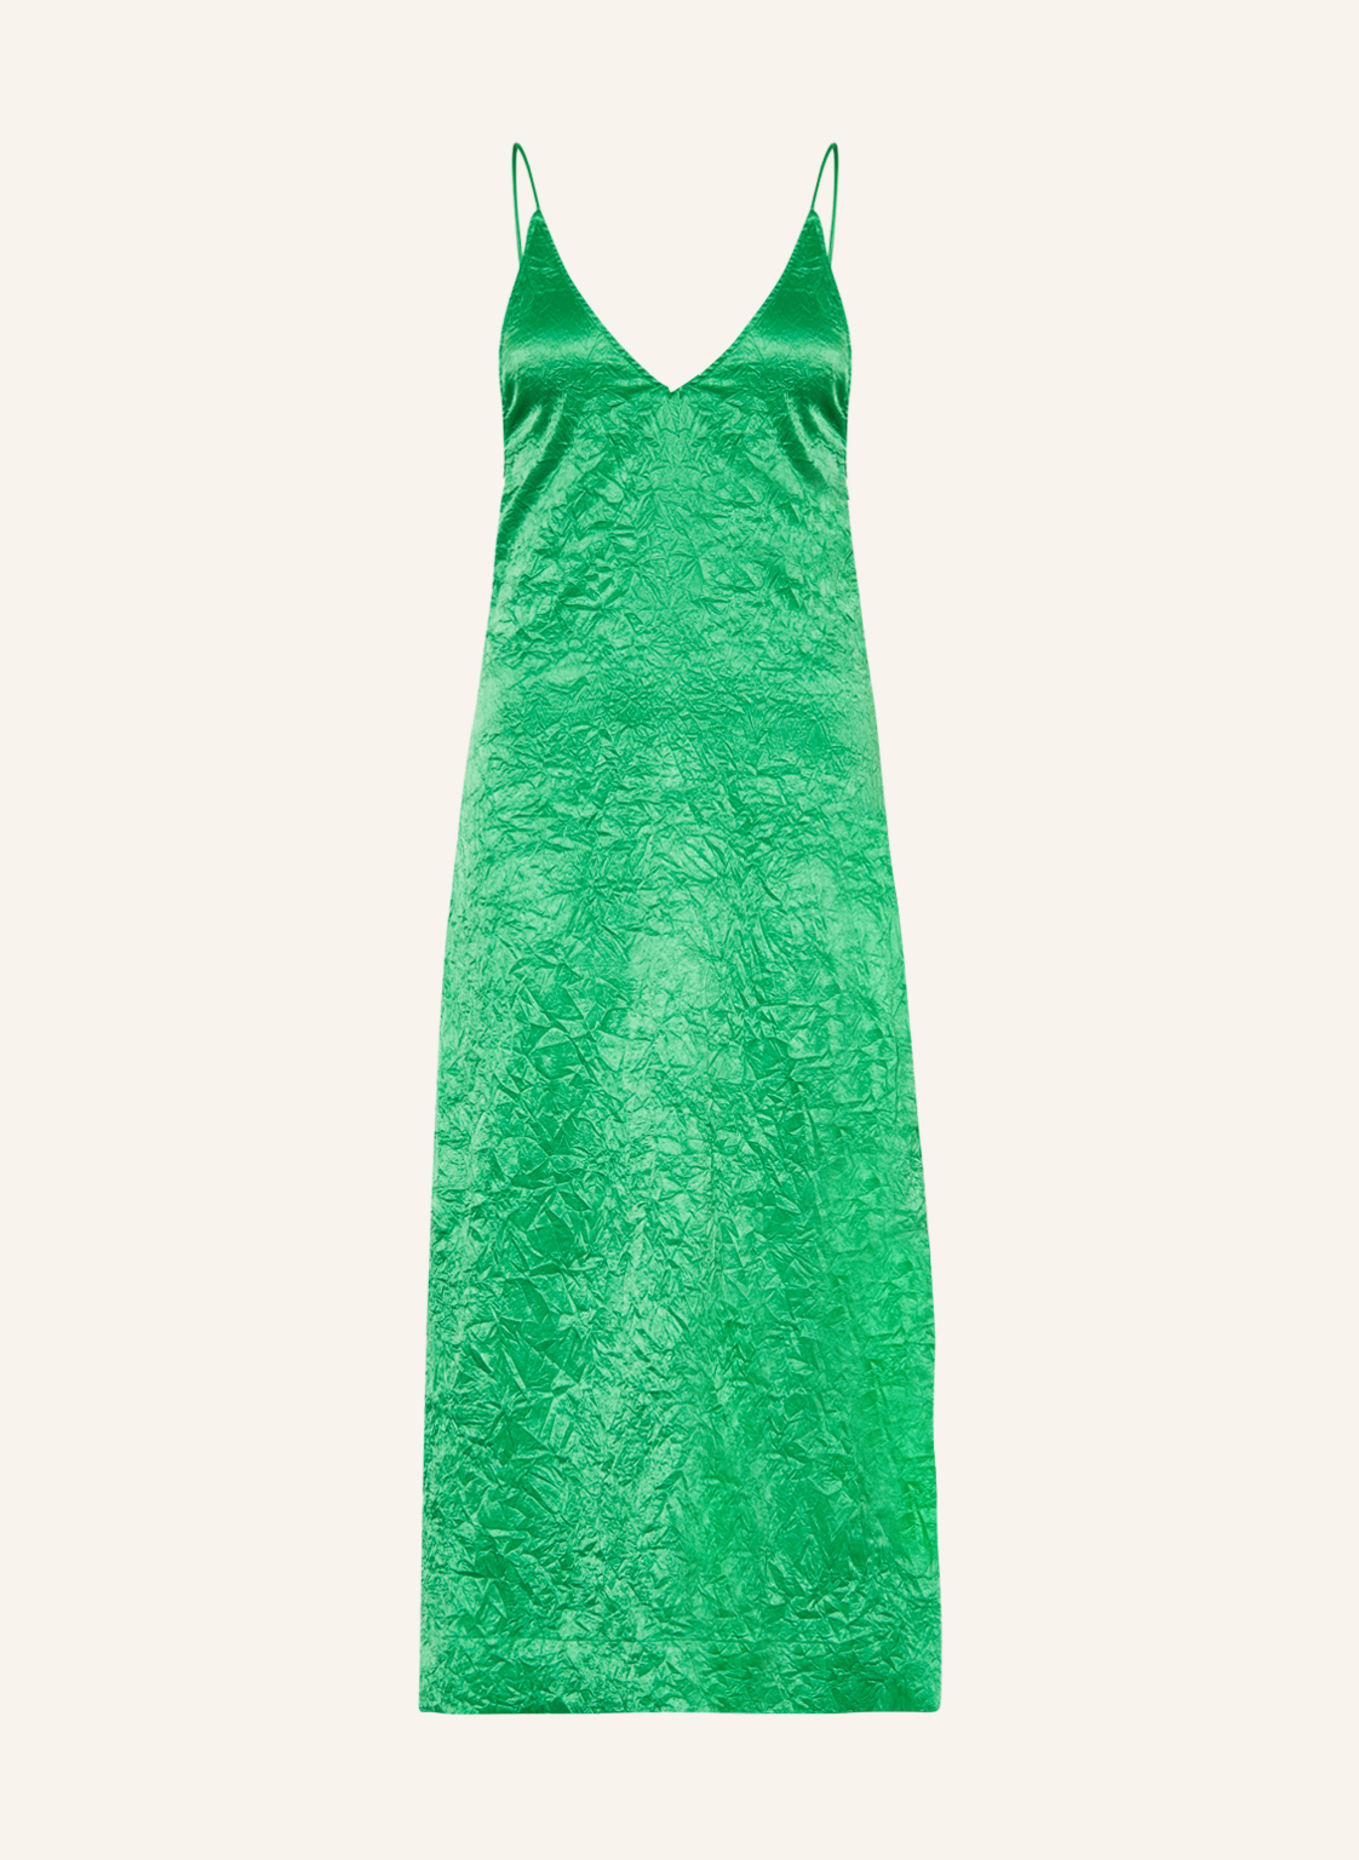 GANNI Satin dress, Color: GREEN (Image 1)